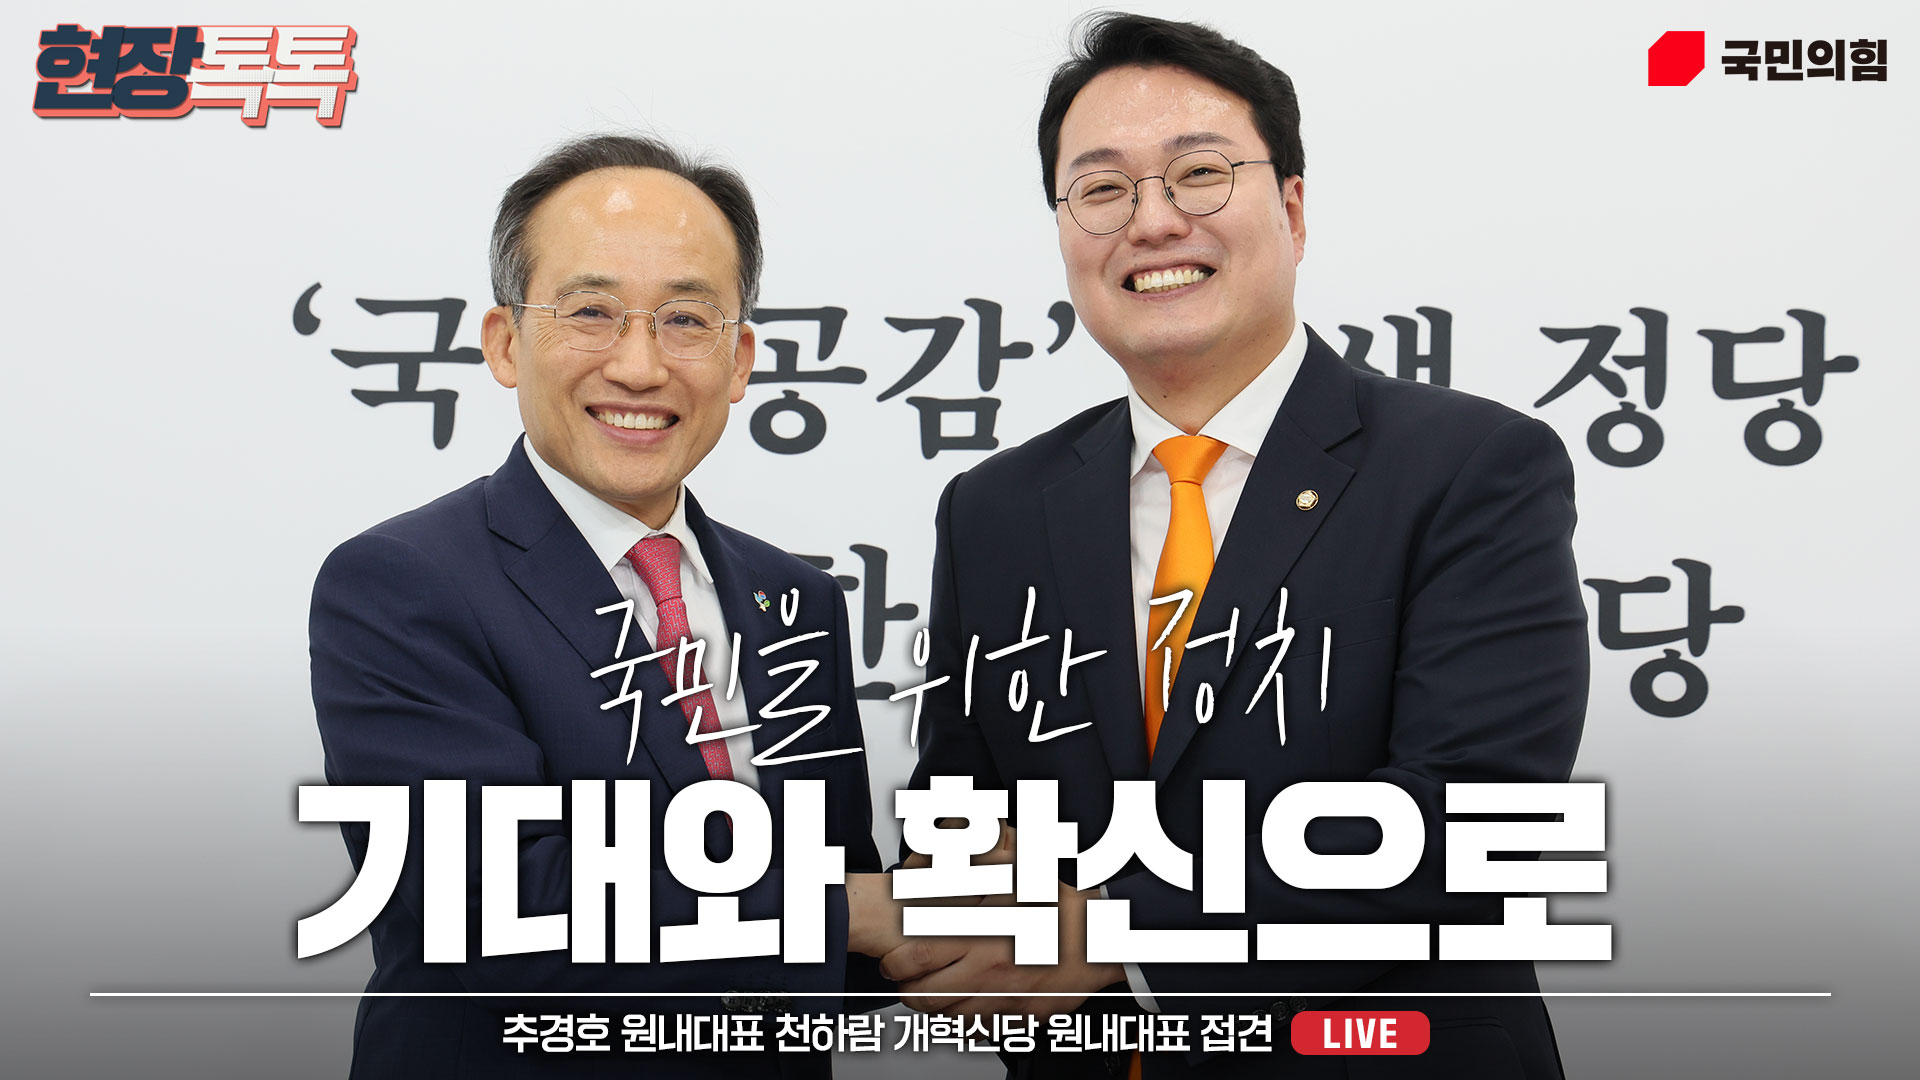 [Live] 6월 4일 추경호 원내대표, 천하람 개혁신당 원내대표 접견